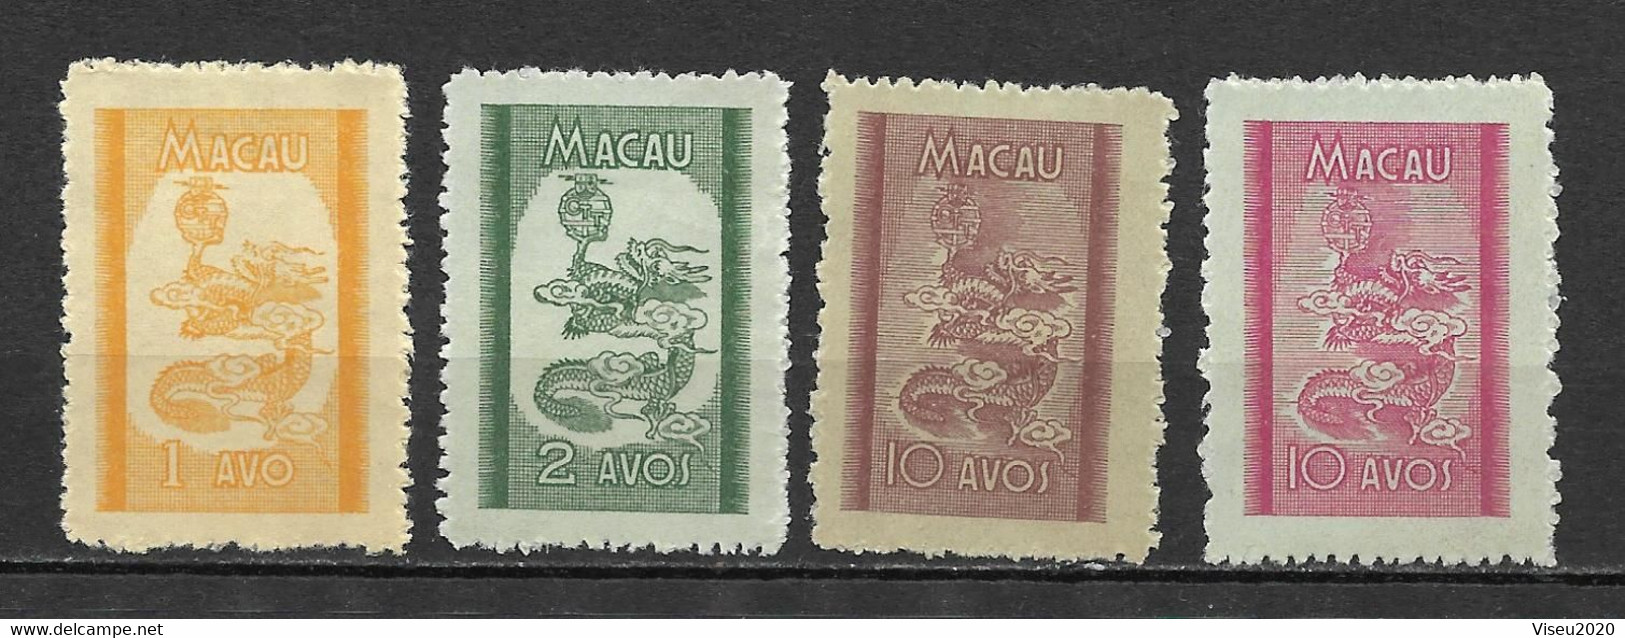 Portugal (Macau) 1950 – Dragões (Dragons) Emissão Local -  Complet Set Macao - Unused Stamps